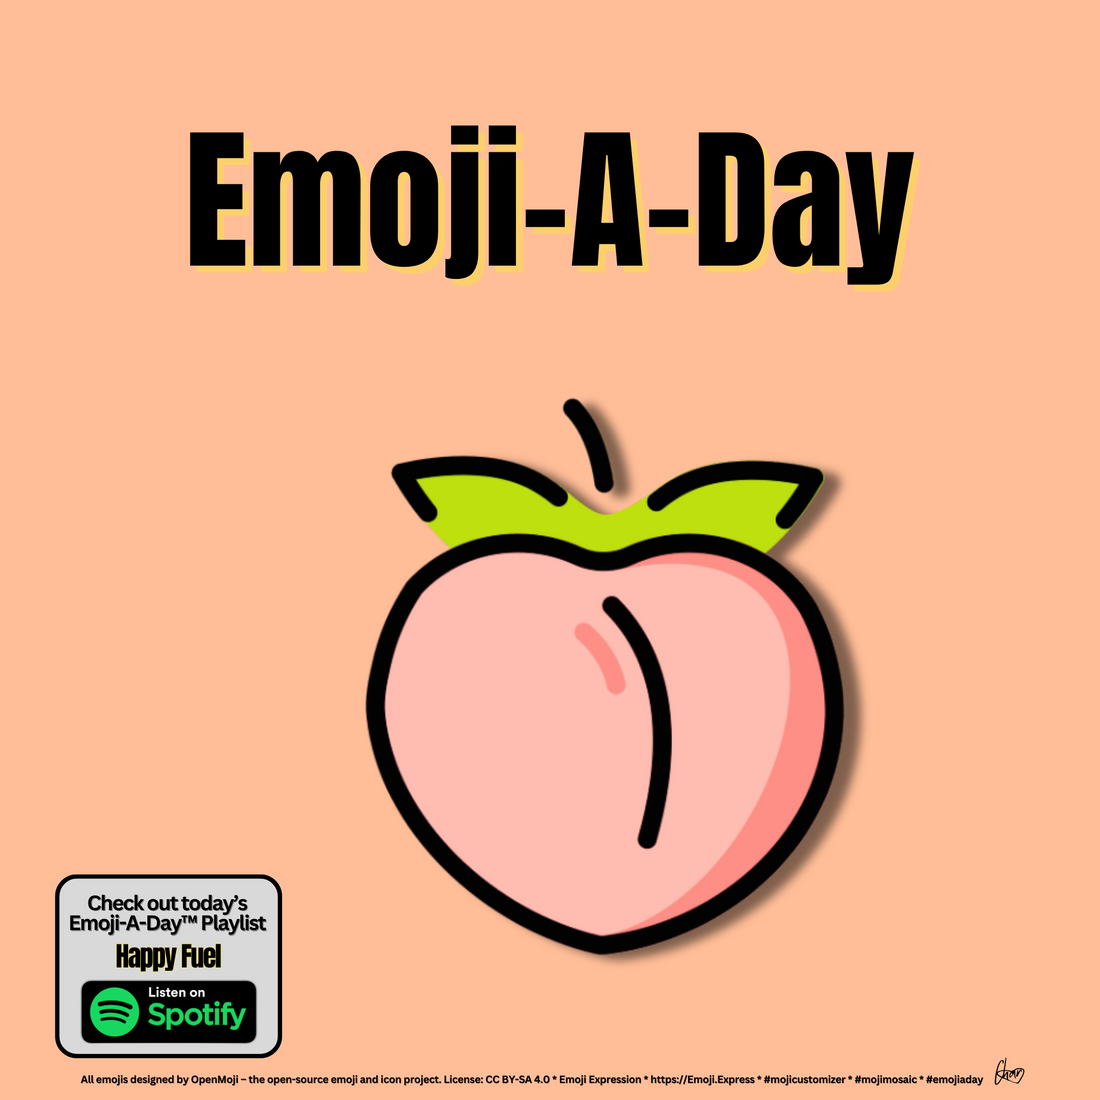 Emoij-A-Day theme with Peach emoji and Happy Fuel Spotify Playlist